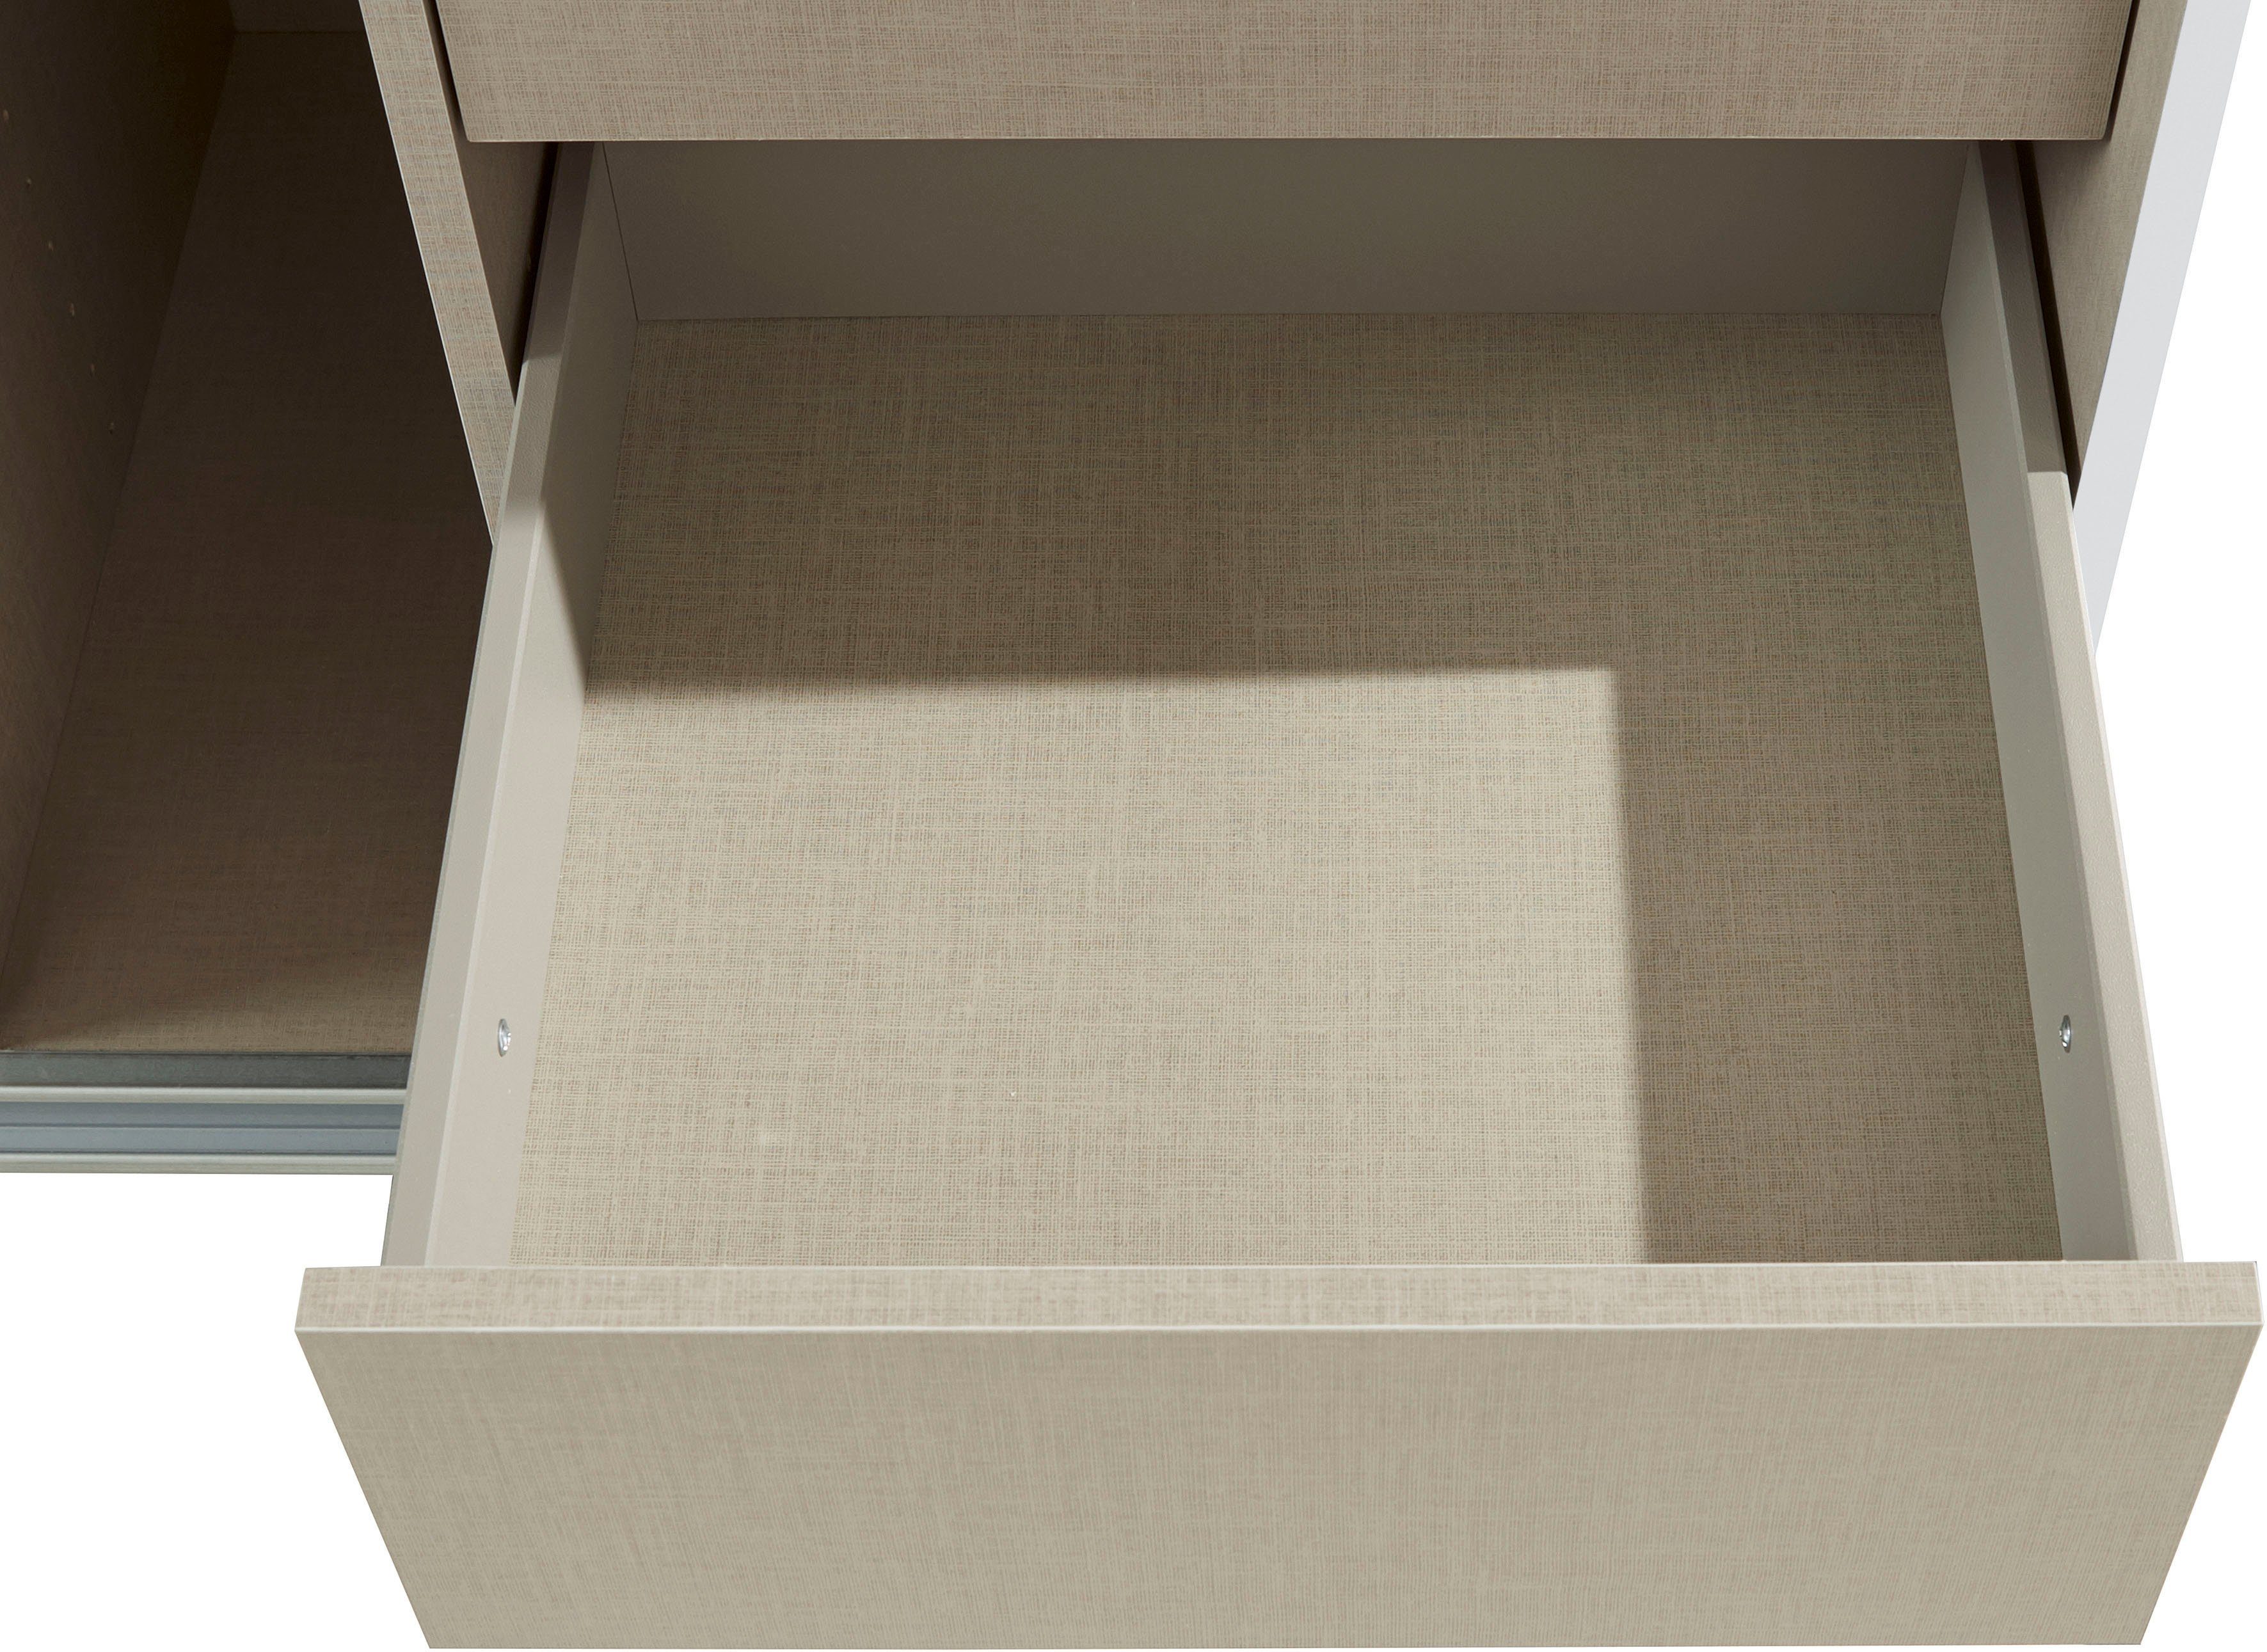 Oteli sowie rauch inkl. 3 Innenschubladen Schwebetürenschrank Weiß mit zusätzlichen Wäscheeinteilung Böden